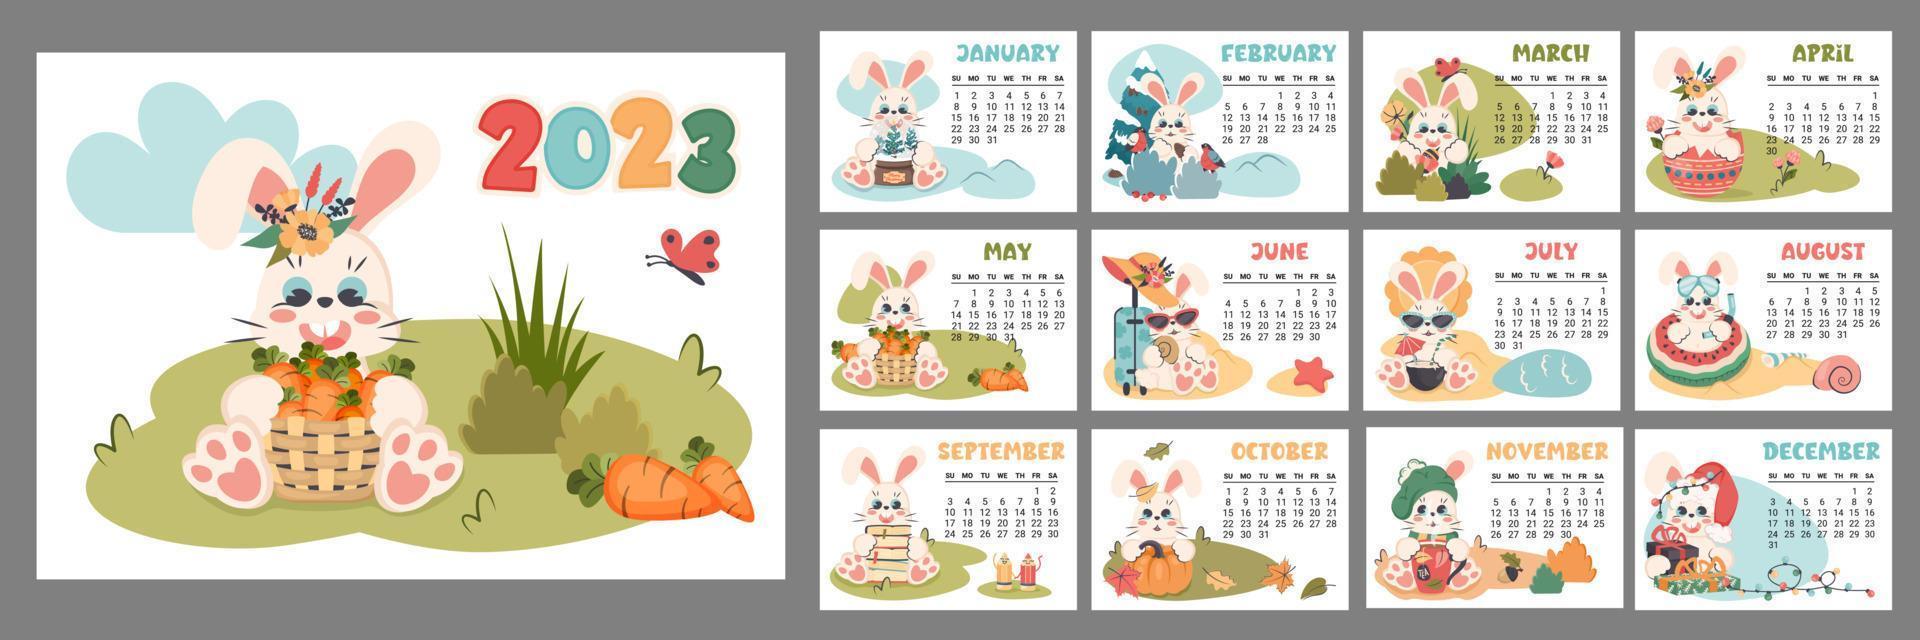 kalender 2023 för varje månad. horisontell planerare med söt kanin i annorlunda säsonger. tecknad serie karaktär kanin som symbol av ny år. vecka börjar på söndag. vektor platt illustration